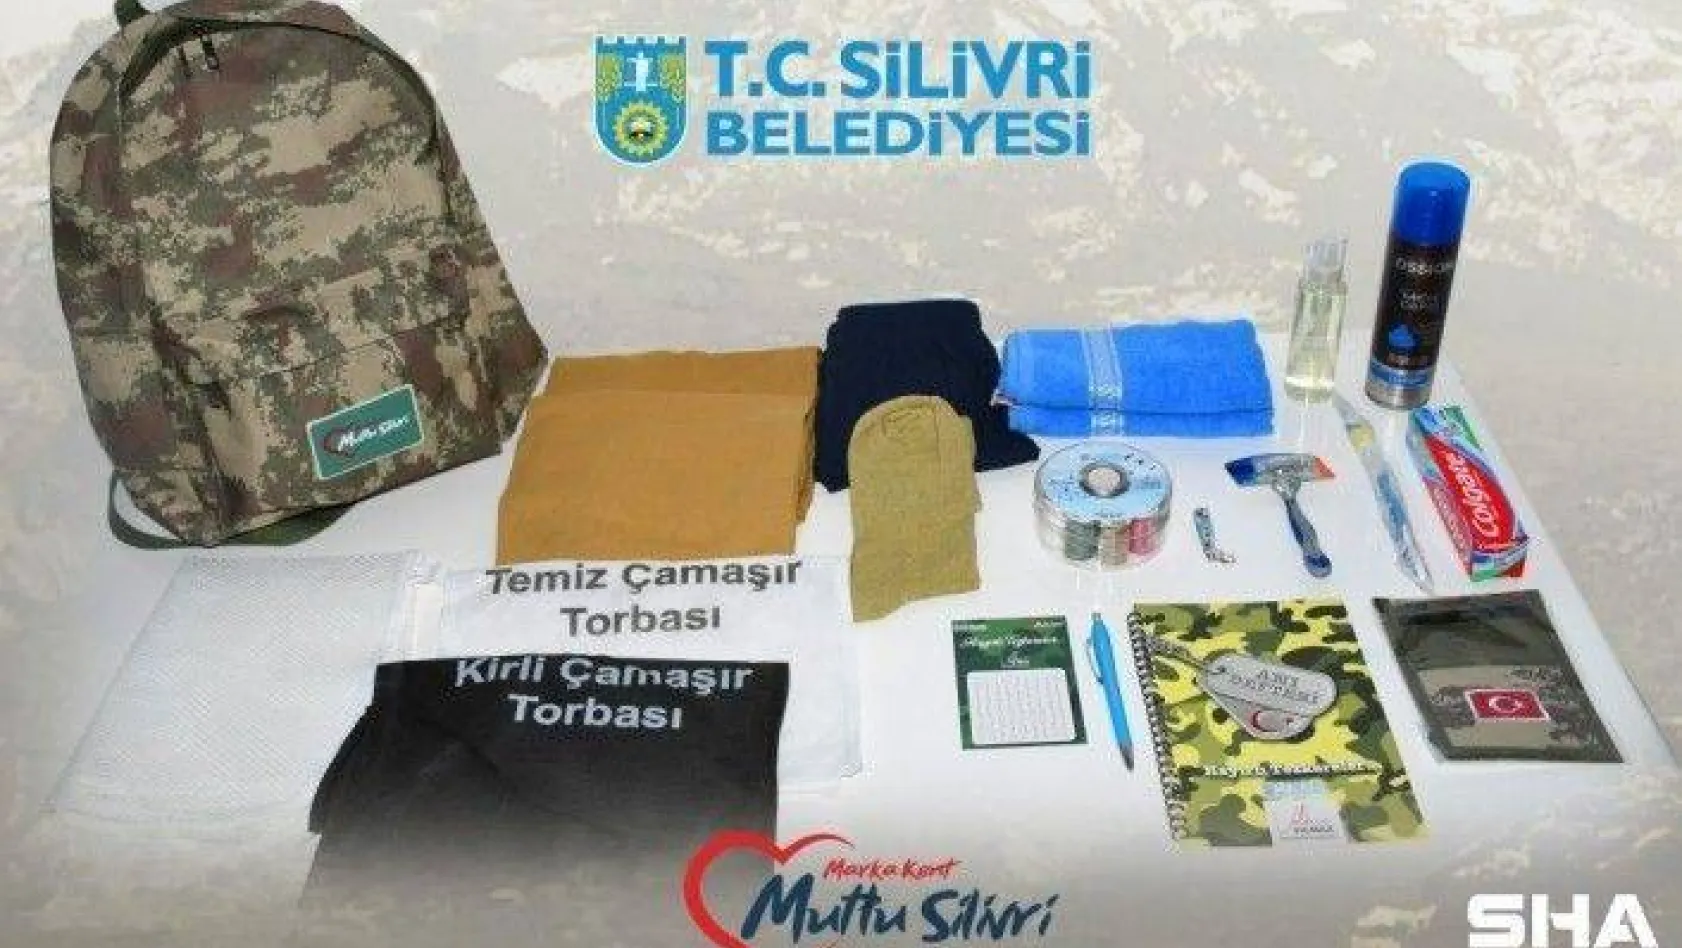 Silivri Belediyesinden Mehmetçiklere Asker Çantası